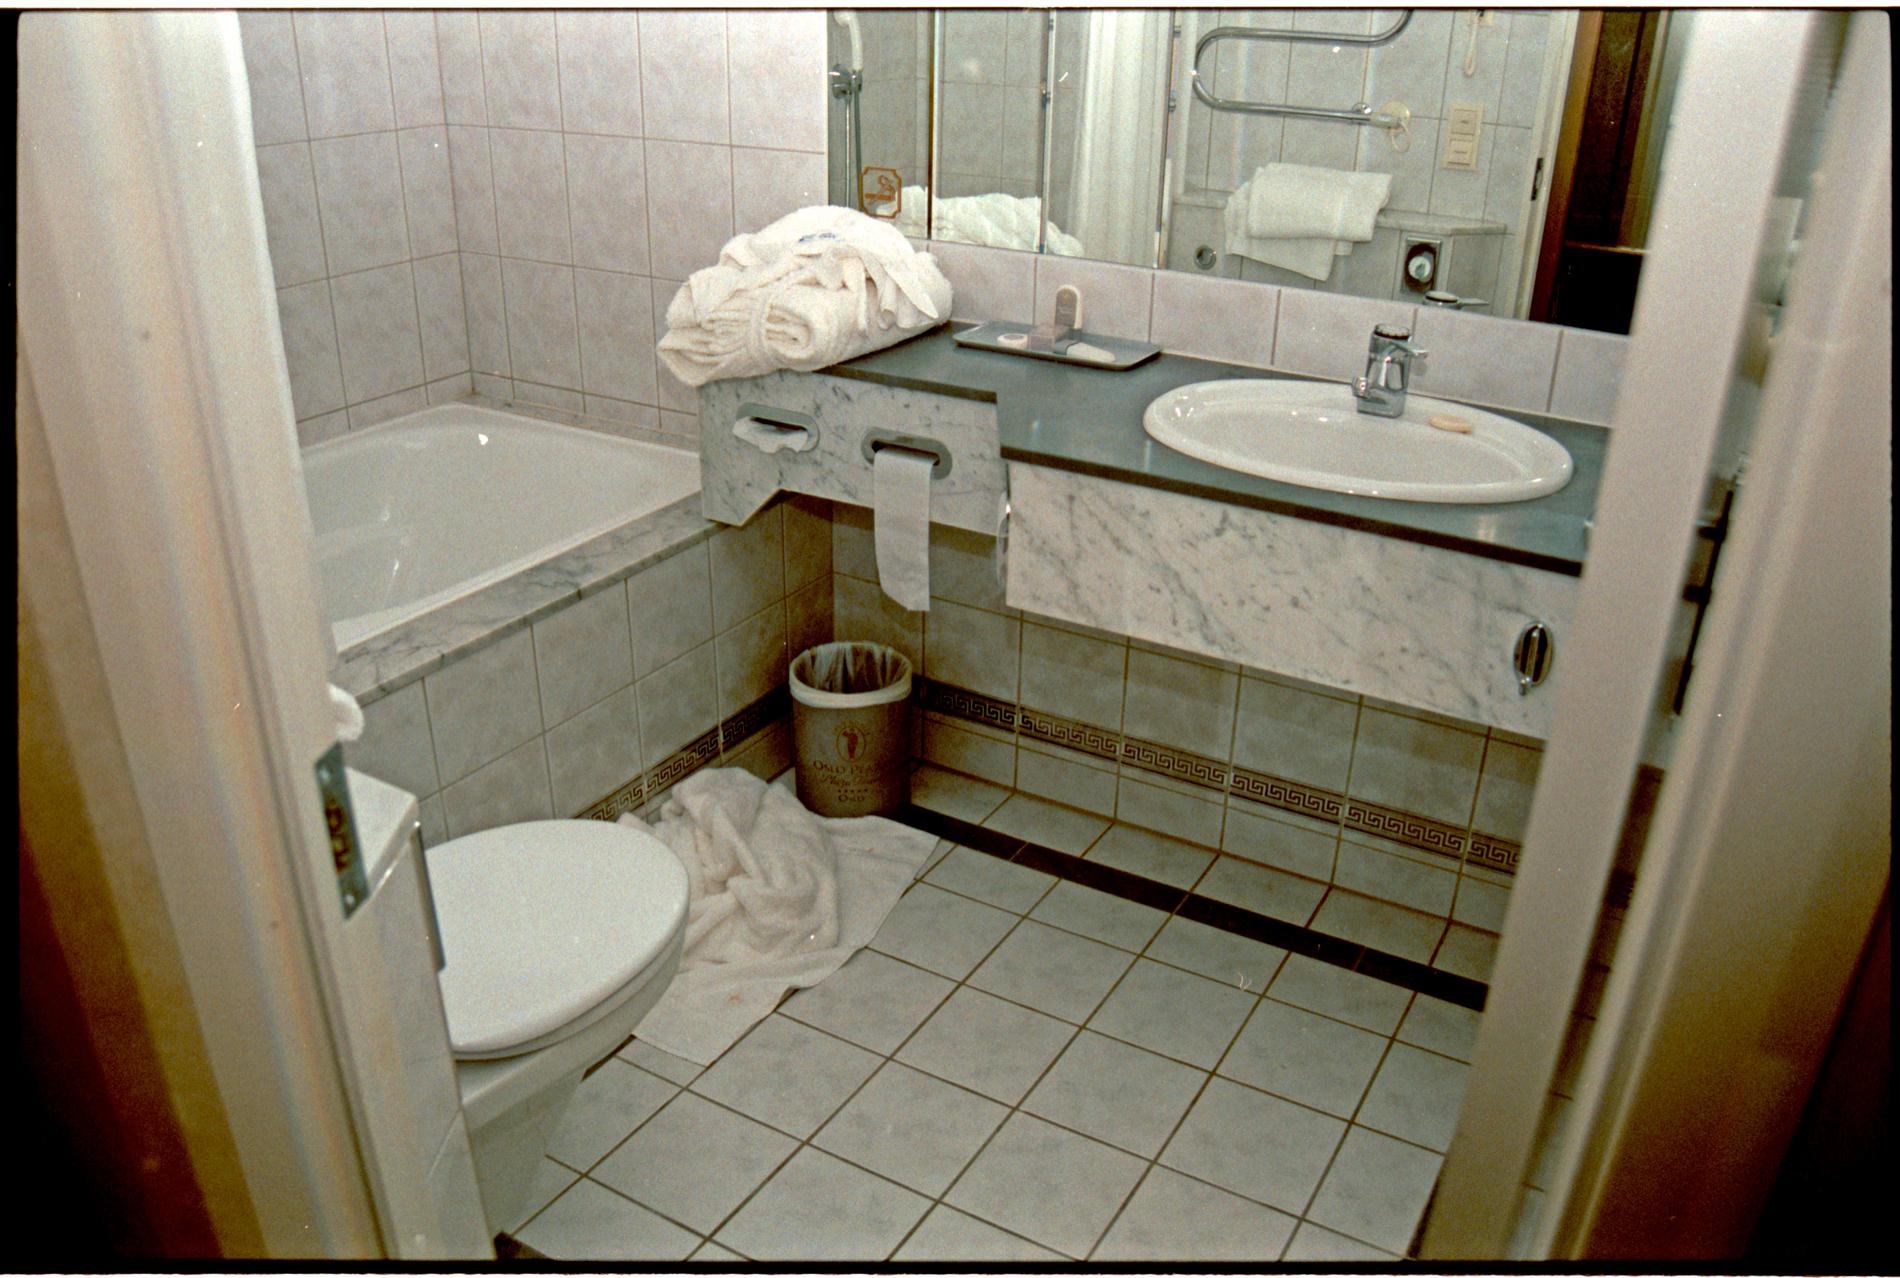 LAST BATH: On the bathroom floor lay a used bath towel. Photo: POLICE.